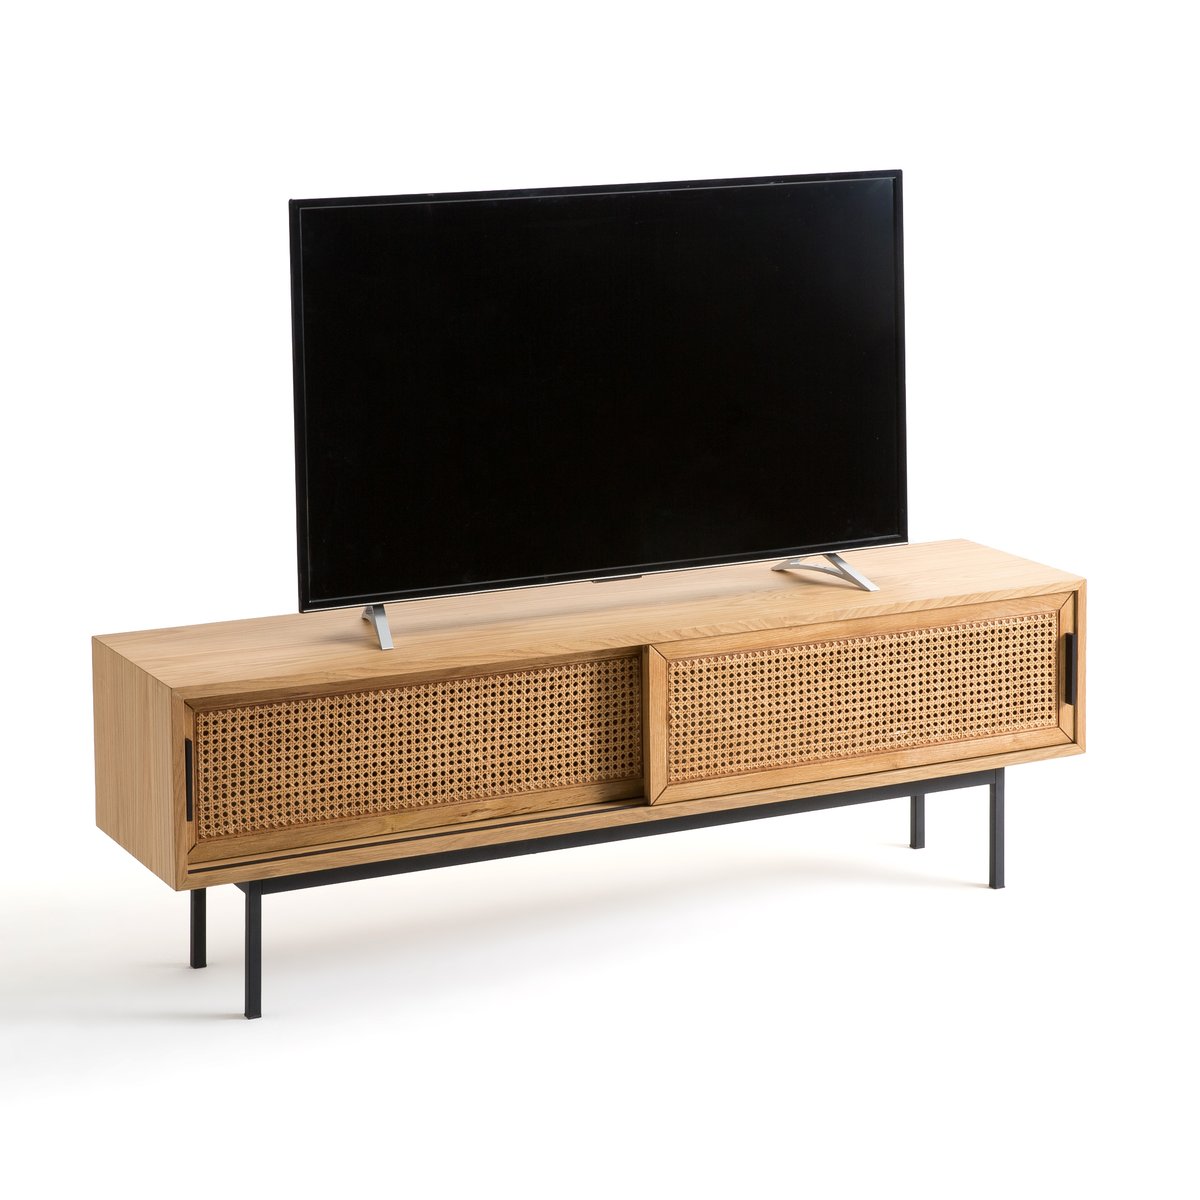 Мебель Для TV дуба и плетеного материала 160 см Waska единый размер каштановый